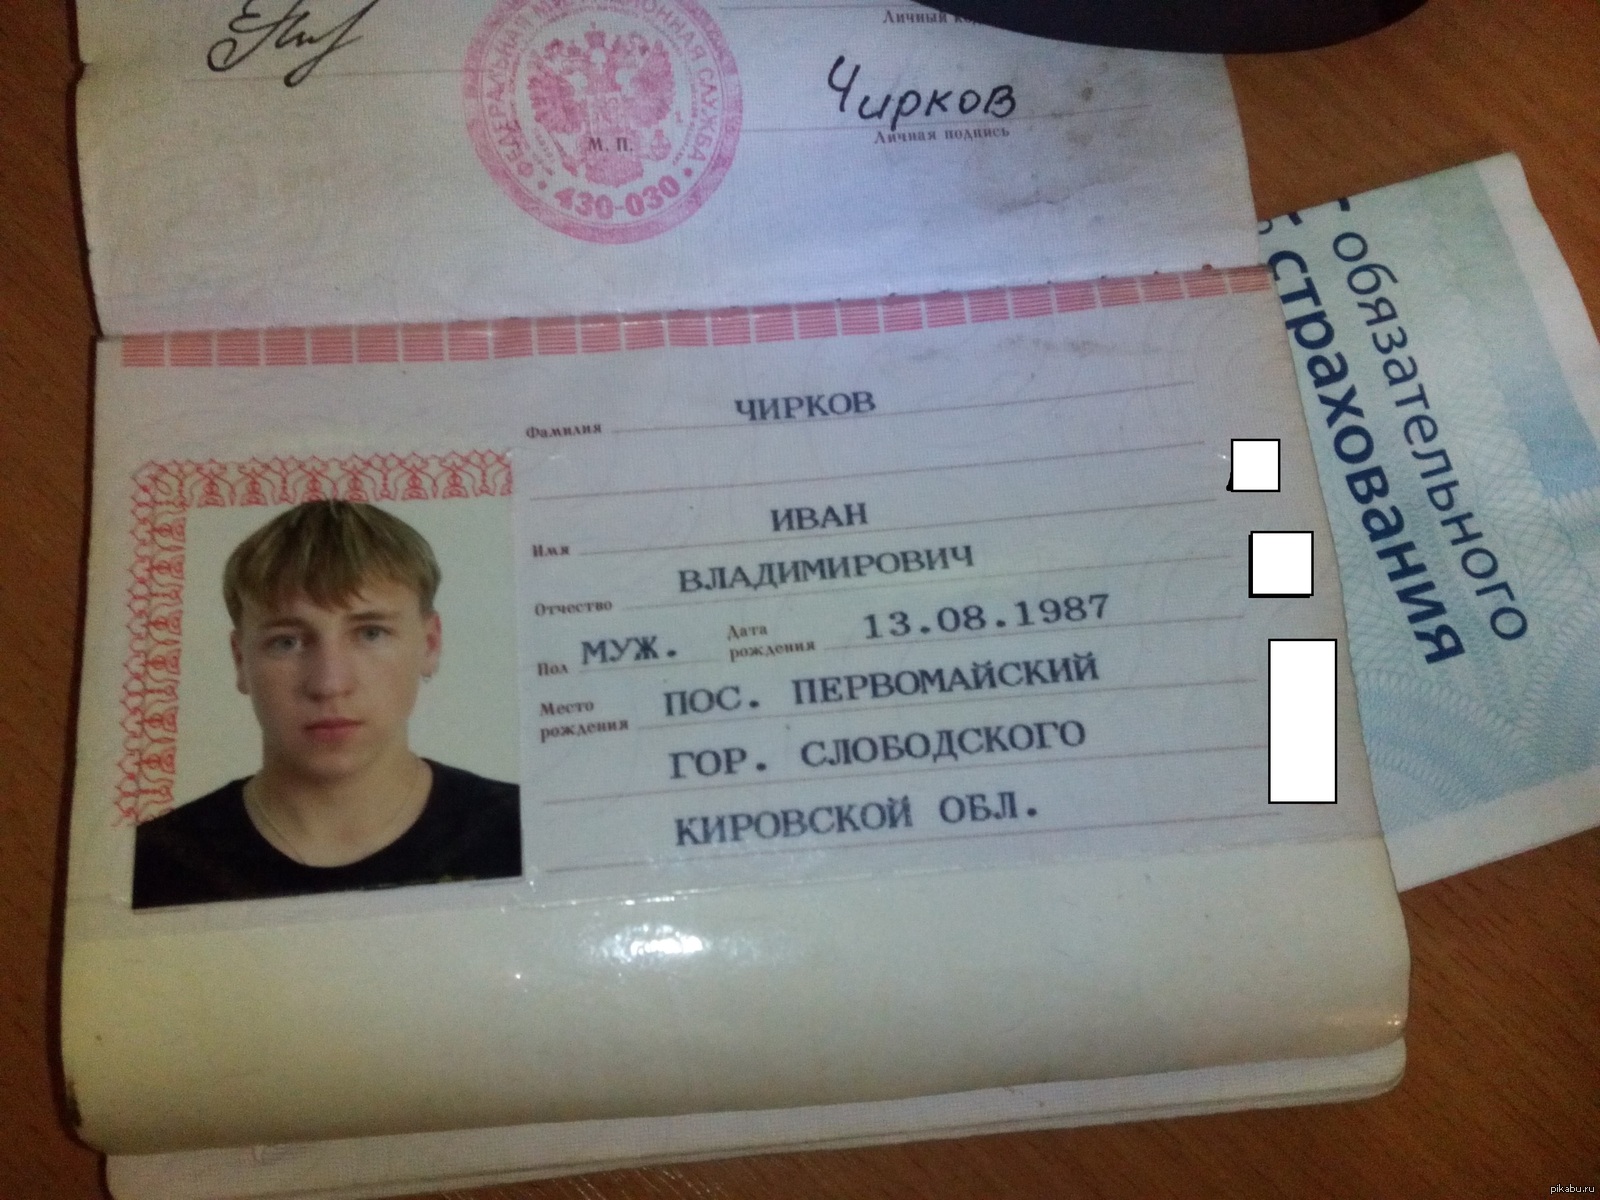 Фото паспорта 1998